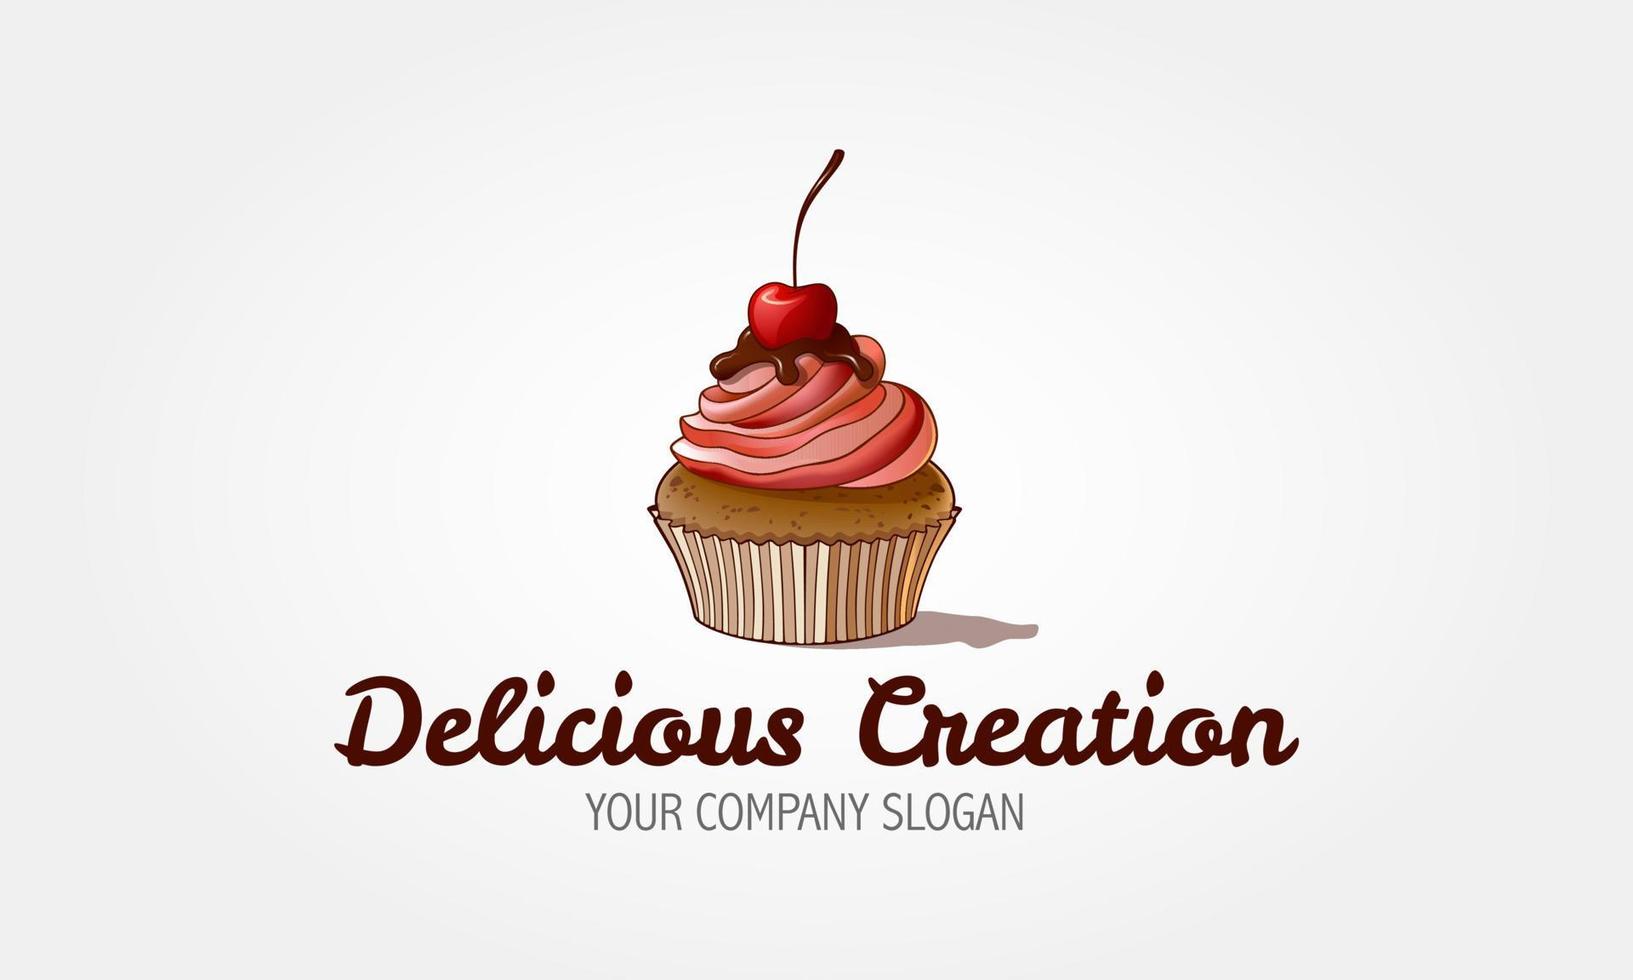 köstliche Schöpfung Vektor-Logo-Vorlage. Sweet Cake ist ein Bäckerei-Logo in sehr hellen Rosa- und Pastellfarben. Logo-Vorlagen, die für Konditoreien oder andere geschäftliche Zwecke verwendet werden können. vektor